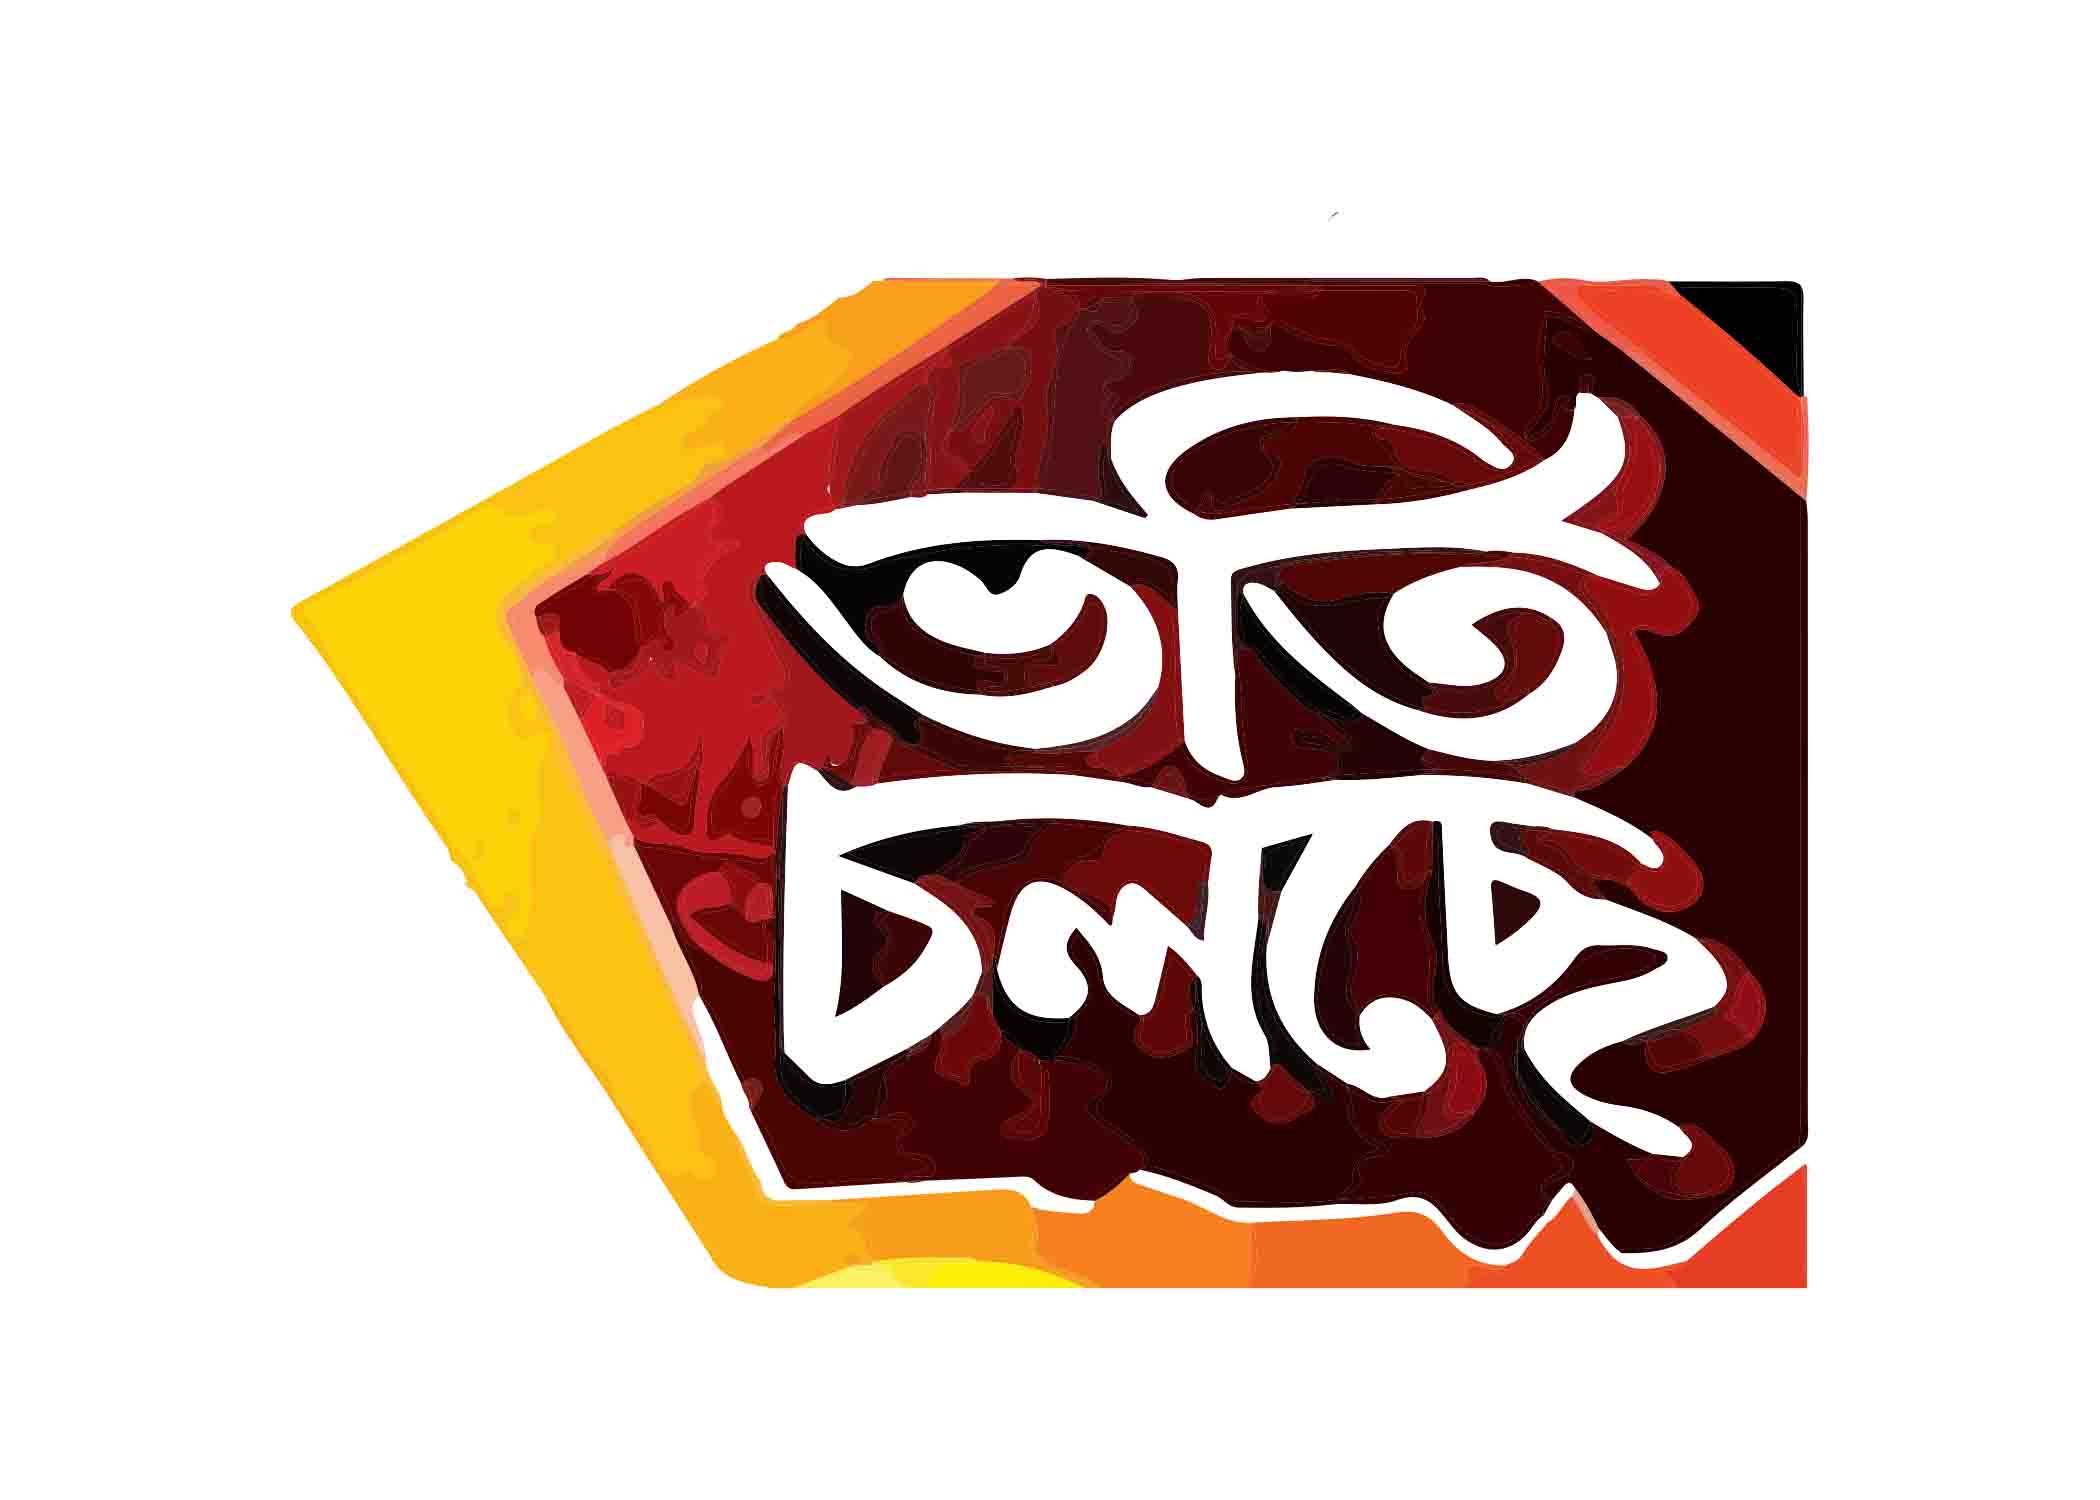 ভর্তি চলছে টাইপোগ্রাফি । Bangla Typhography PNG